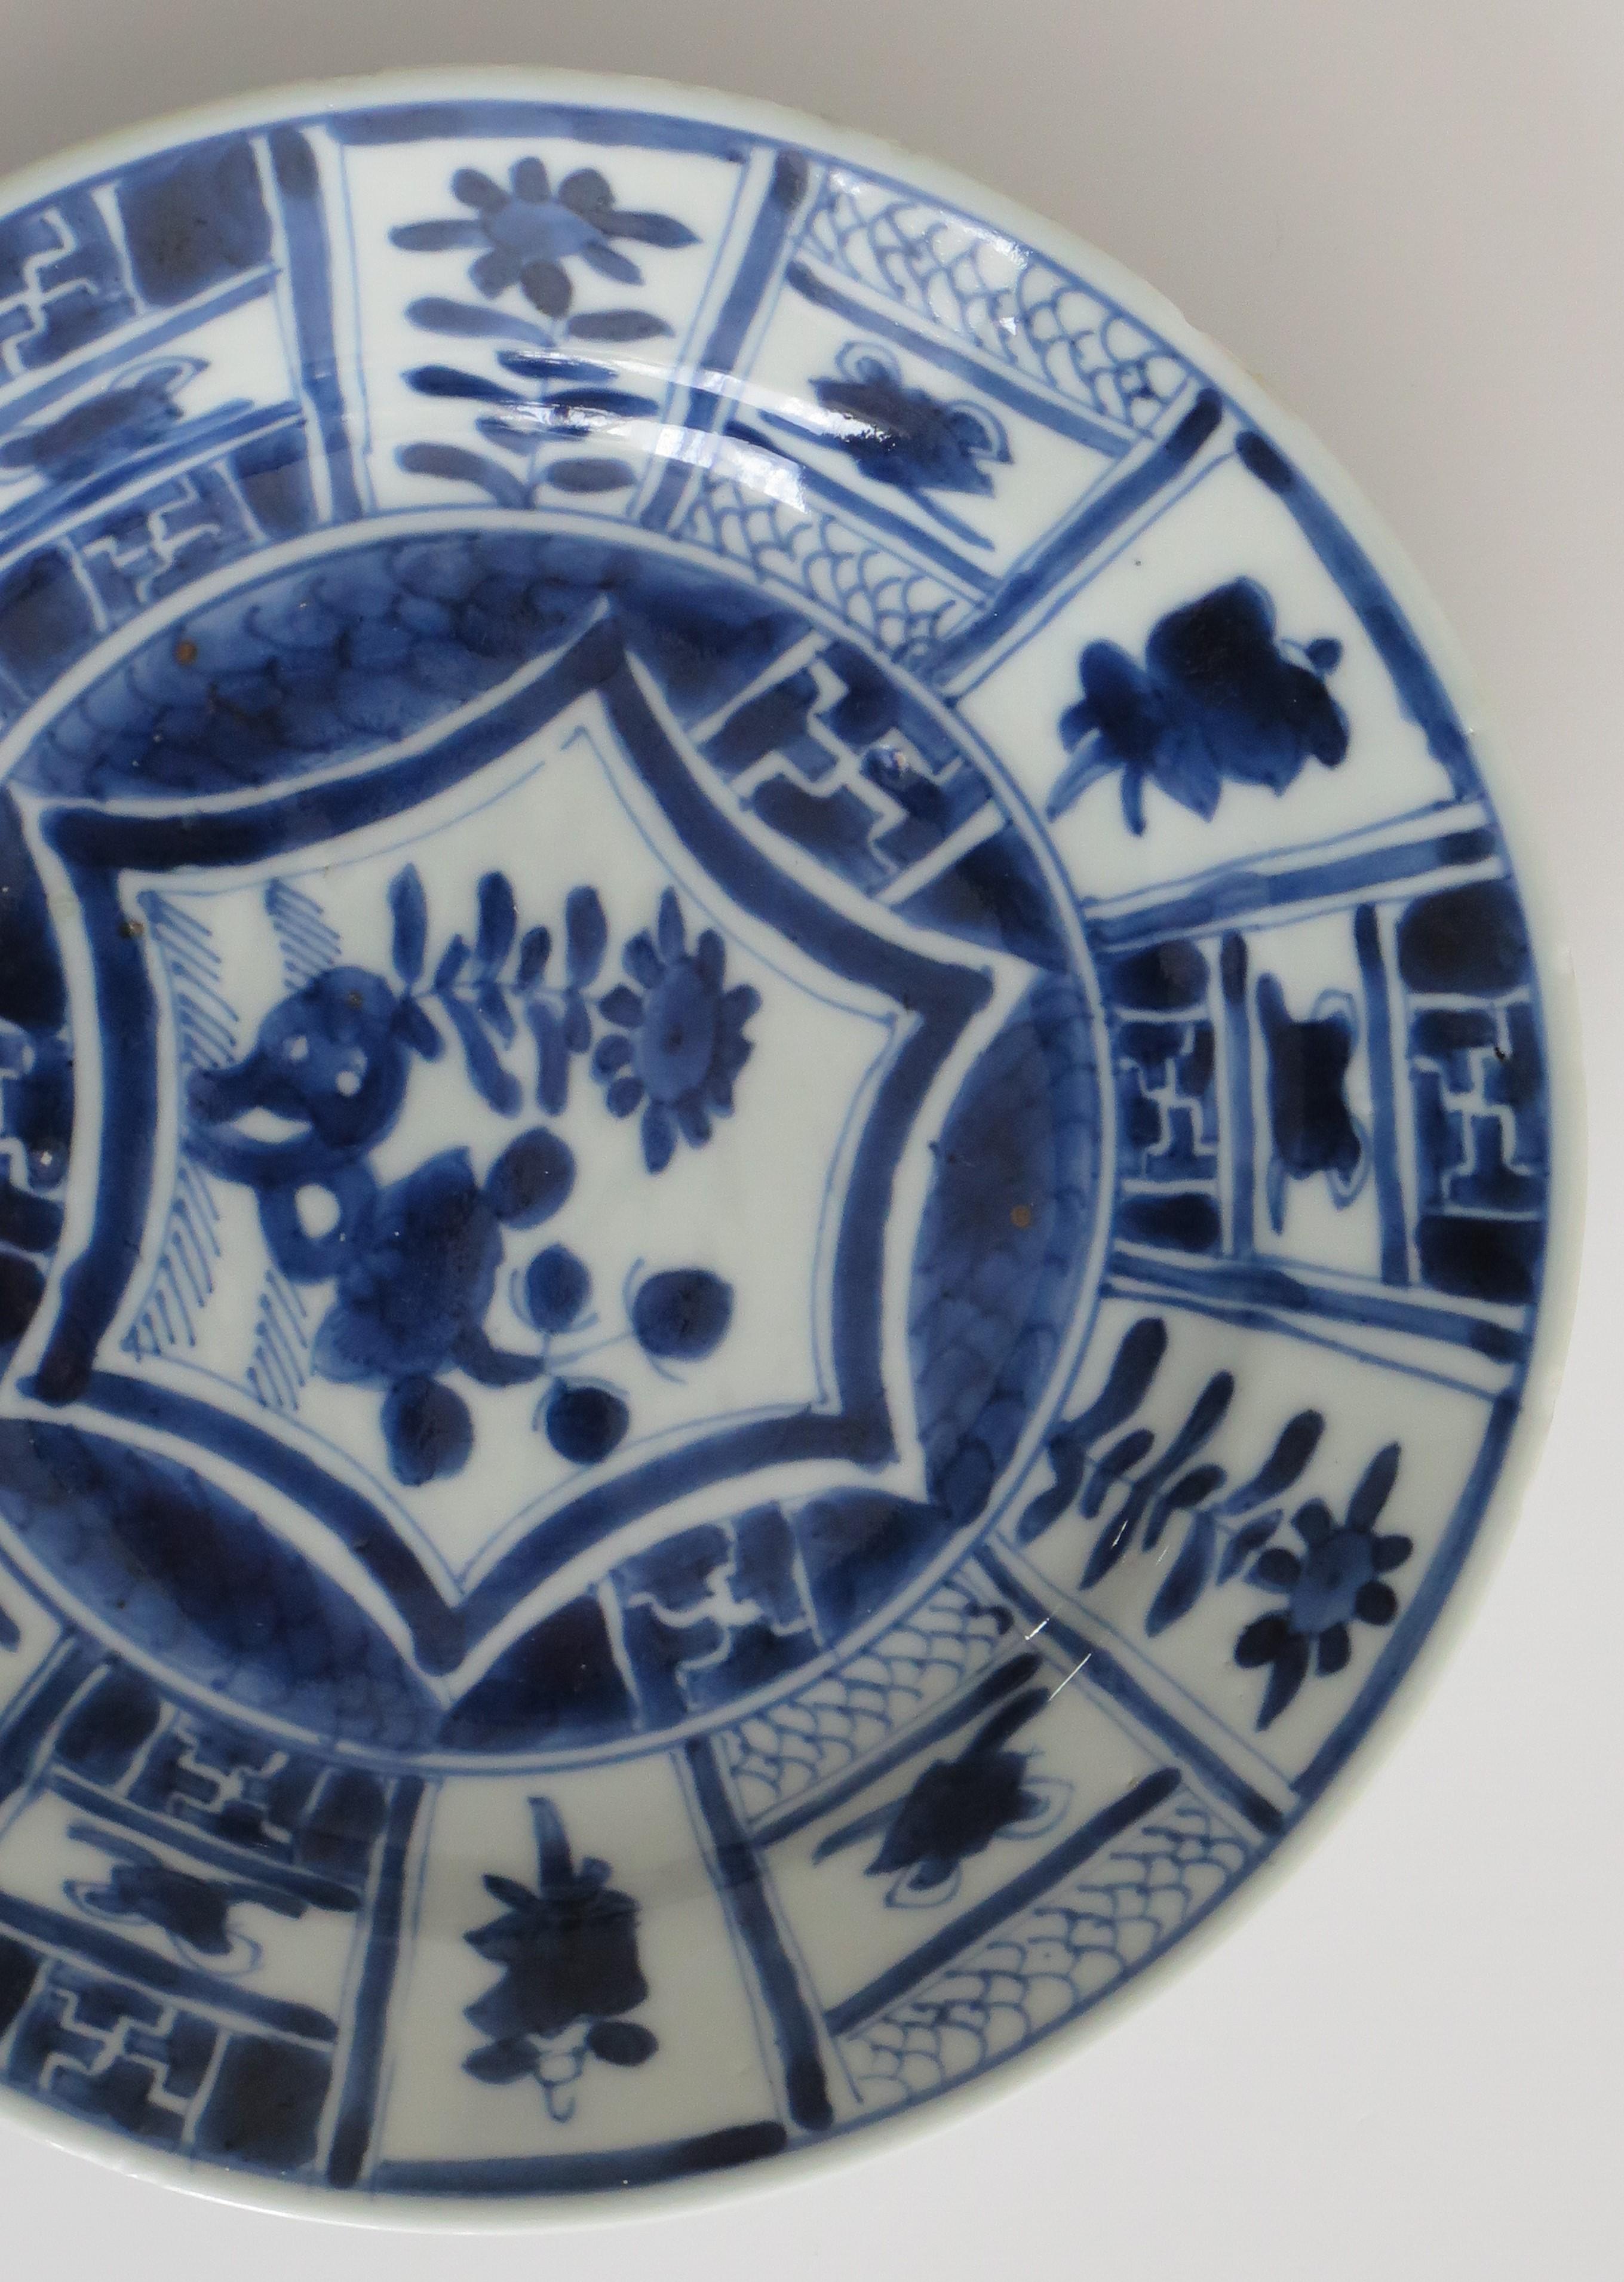 Il s'agit d'une assiette d'accompagnement ou d'un plat en porcelaine bleue et blanche peinte à la main et datant de la période Ming, Wanli (1573-1620), soit du début du XVIIe siècle.

L'assiette/le plat est bien empoté(e) avec un bord de base